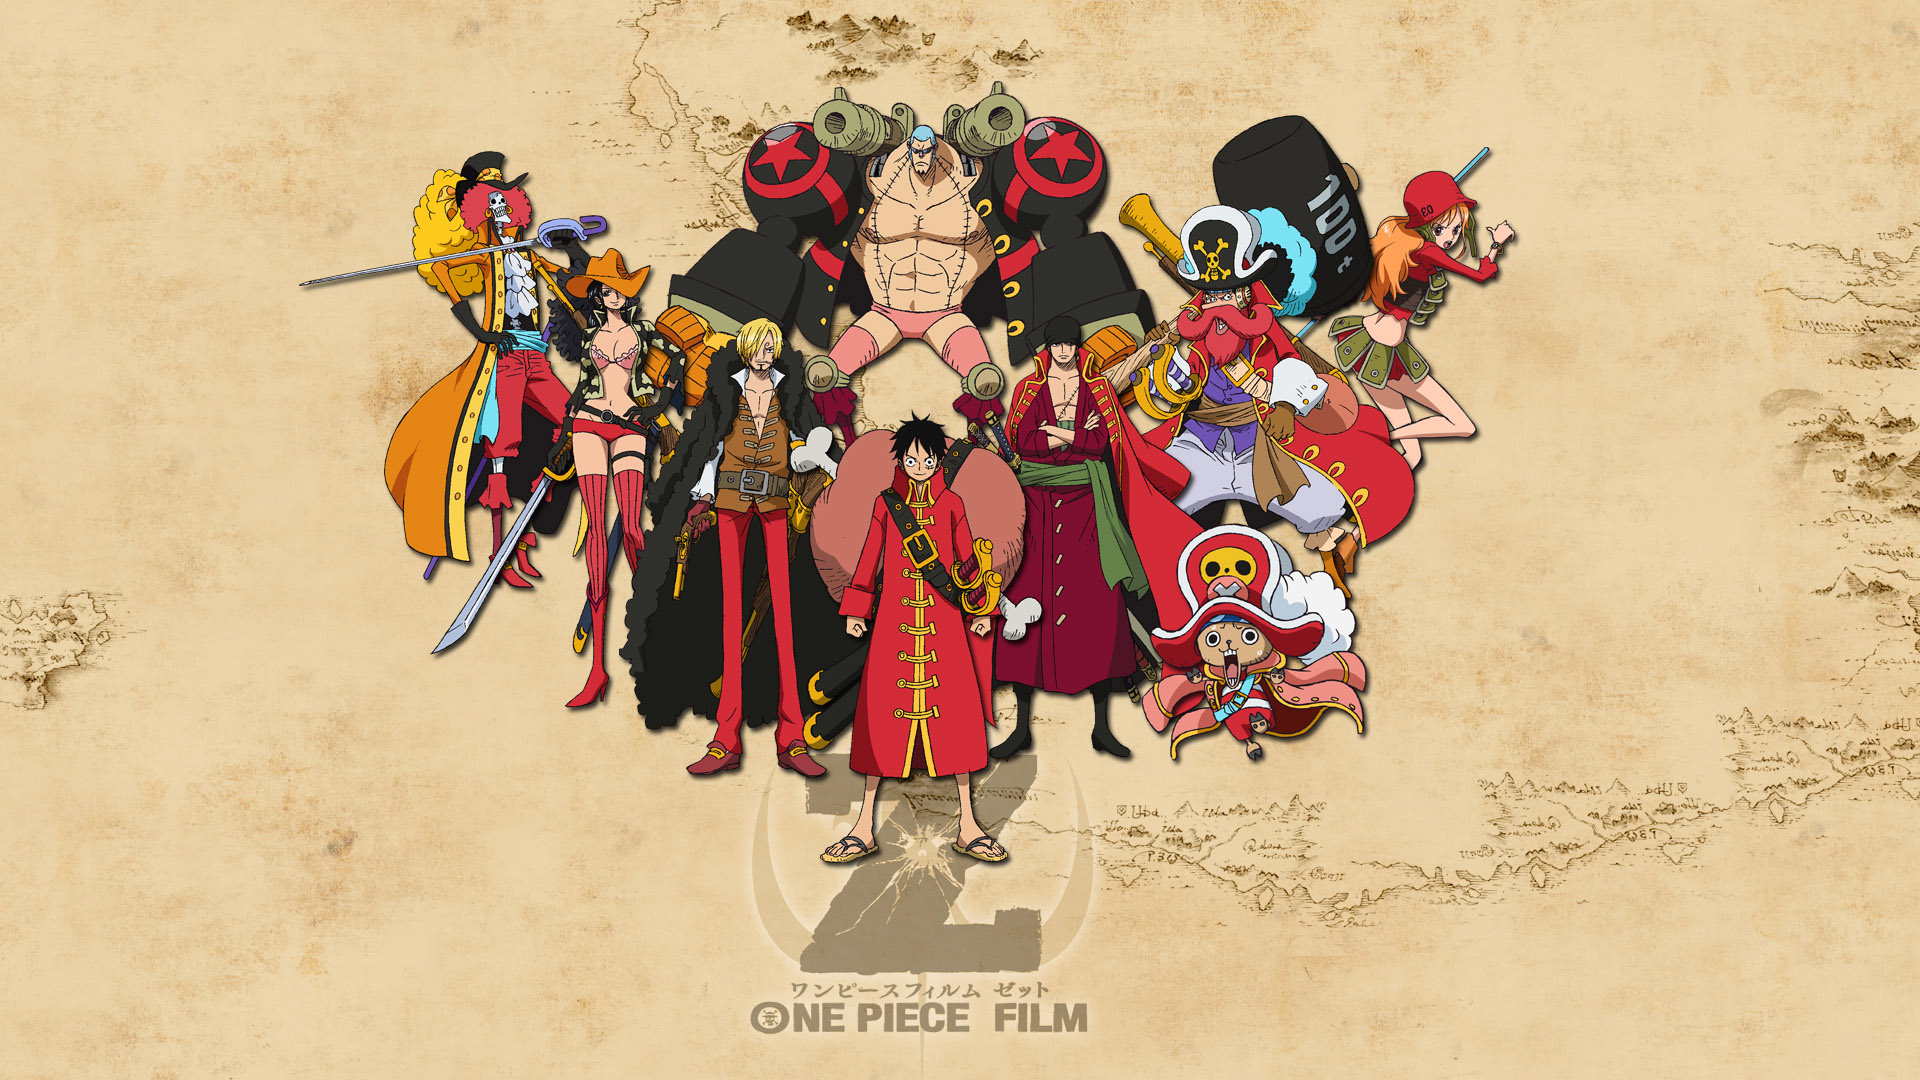 One Piece Wallpaper Hd Free Dowload Pixelstalk
one - One Piece Film Z - HD Wallpaper 